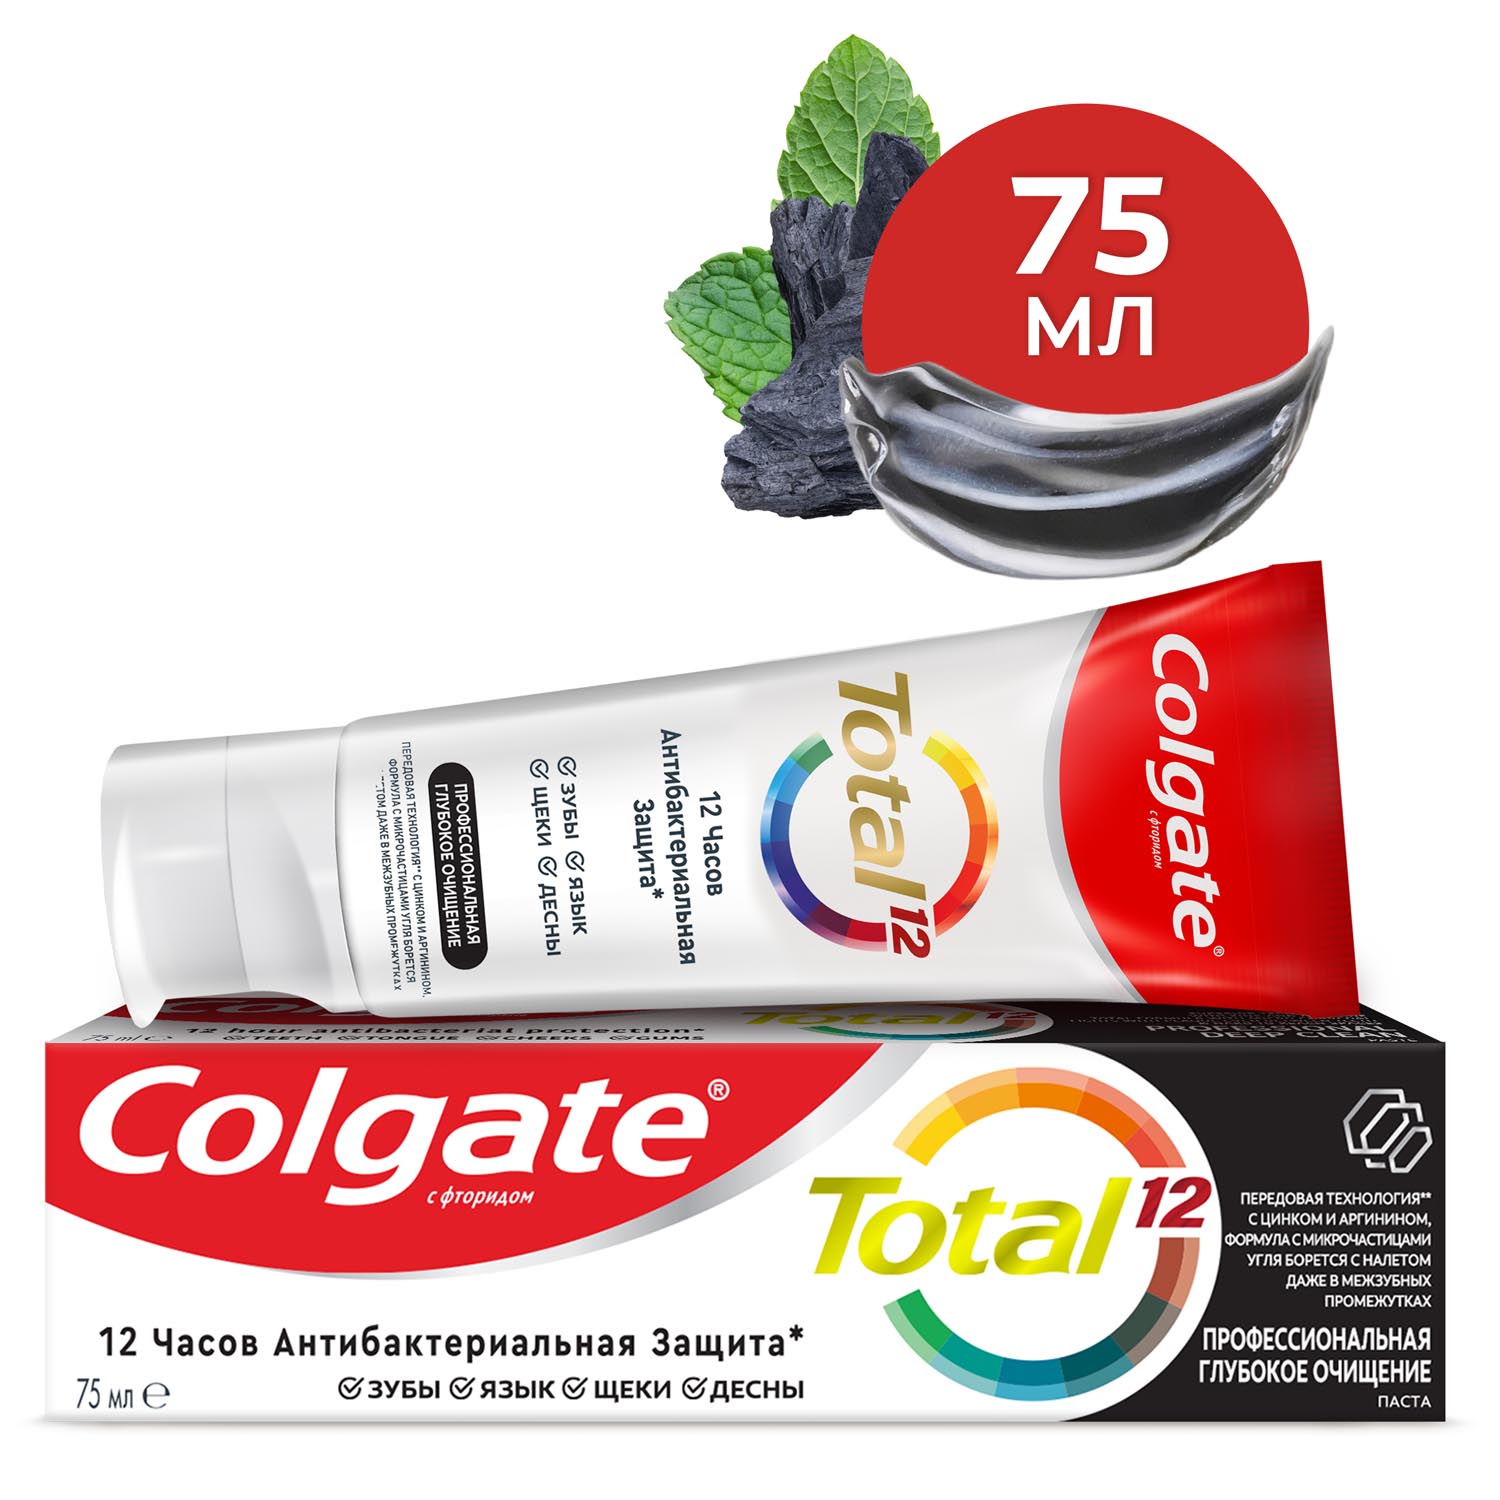 Зубная паста Colgate Total 12 Профессиональная Глубокое Очищение с древесным углем, а также с цинком и аргинином для антибактериальной защиты всей полости рта в течение 12 часов, 75 мл